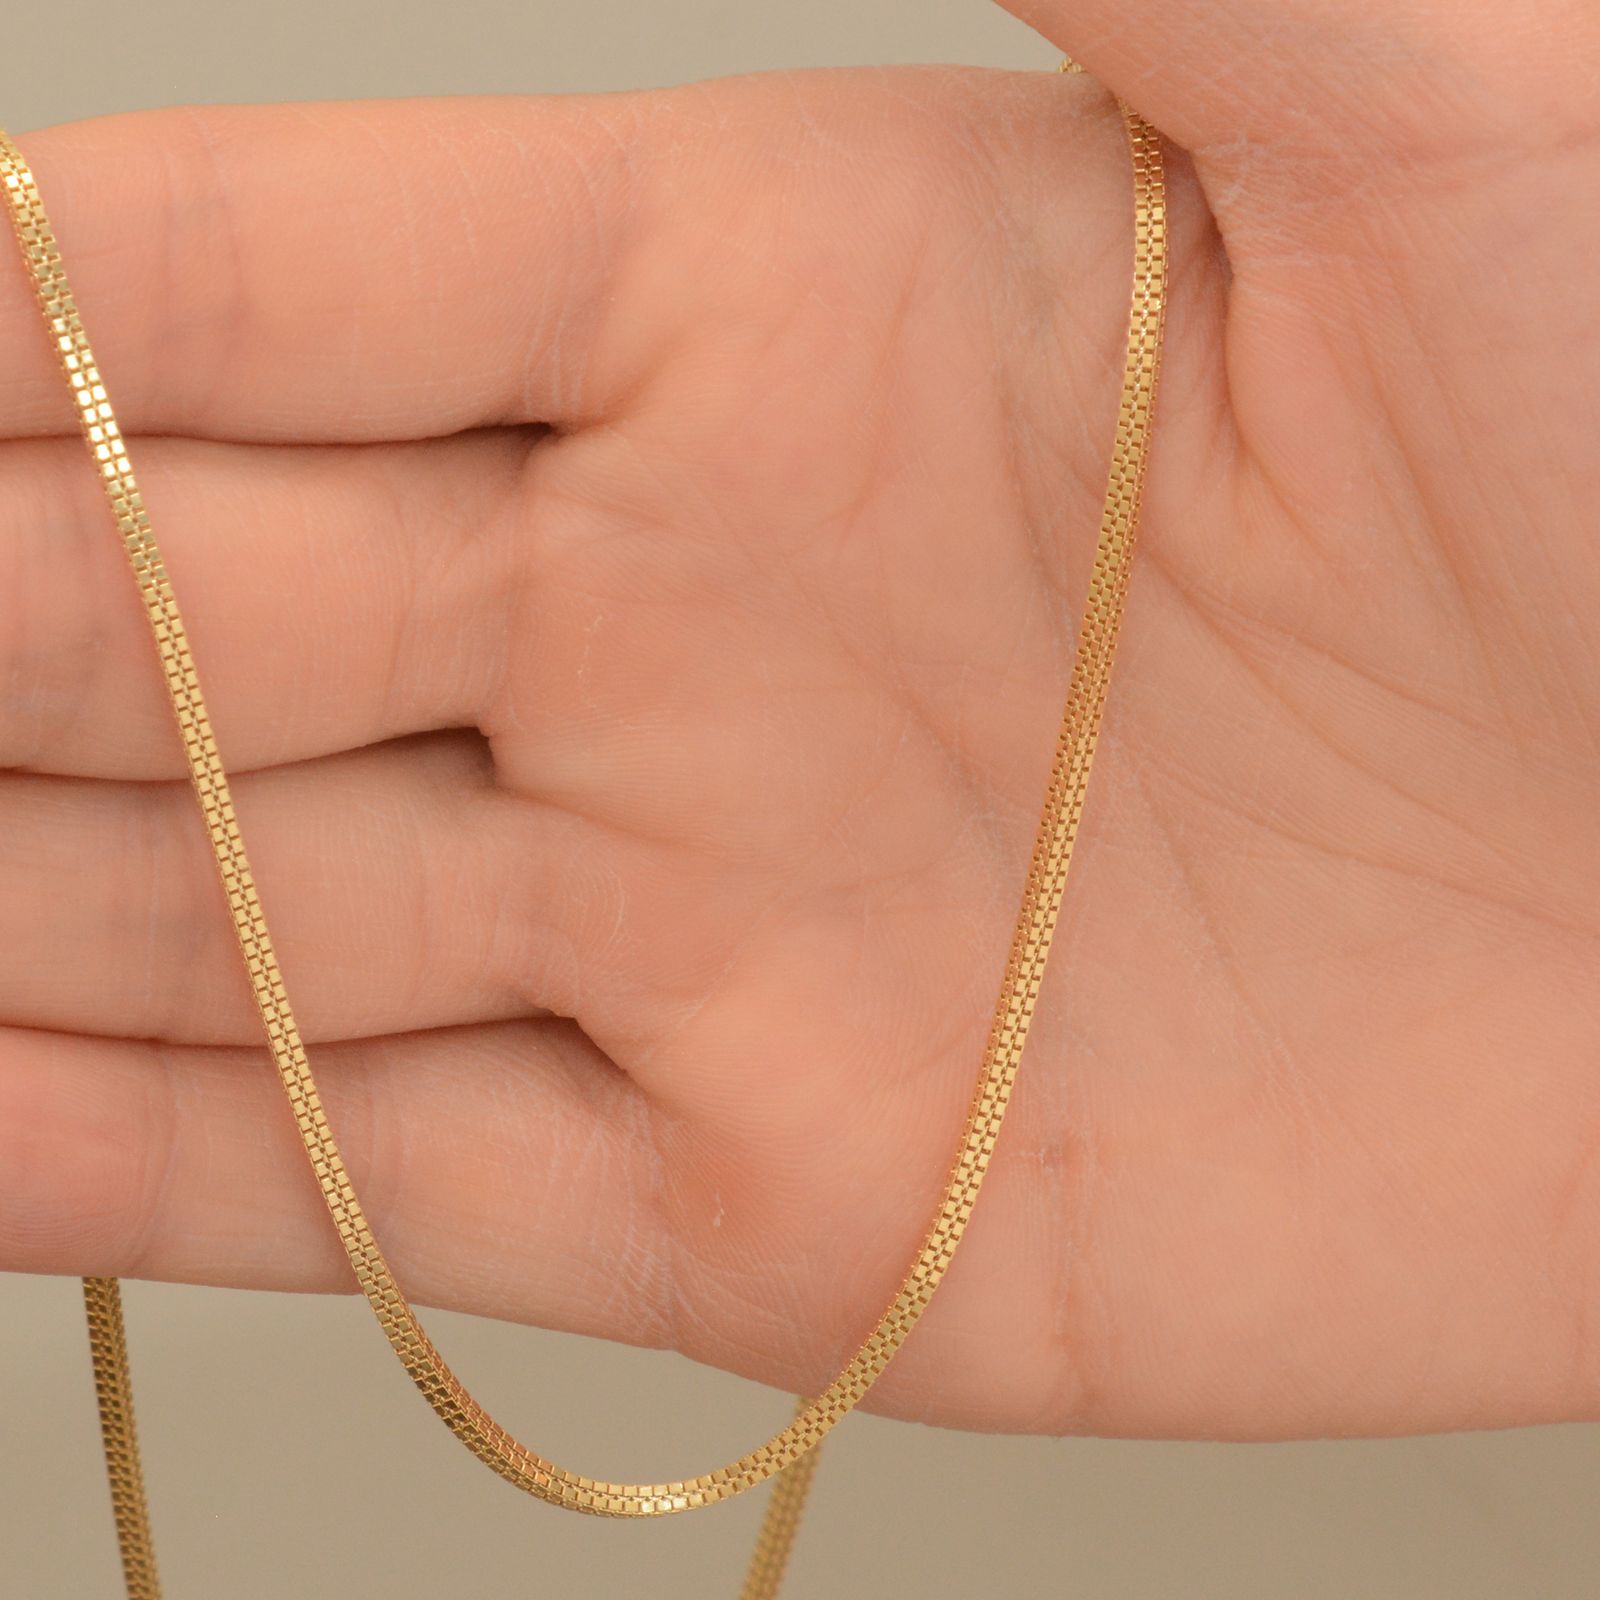 زنجیر طلا 18 عیار زنانه طلای مستجابی مدل ونیزی چهارگوش کد M50 -  - 2